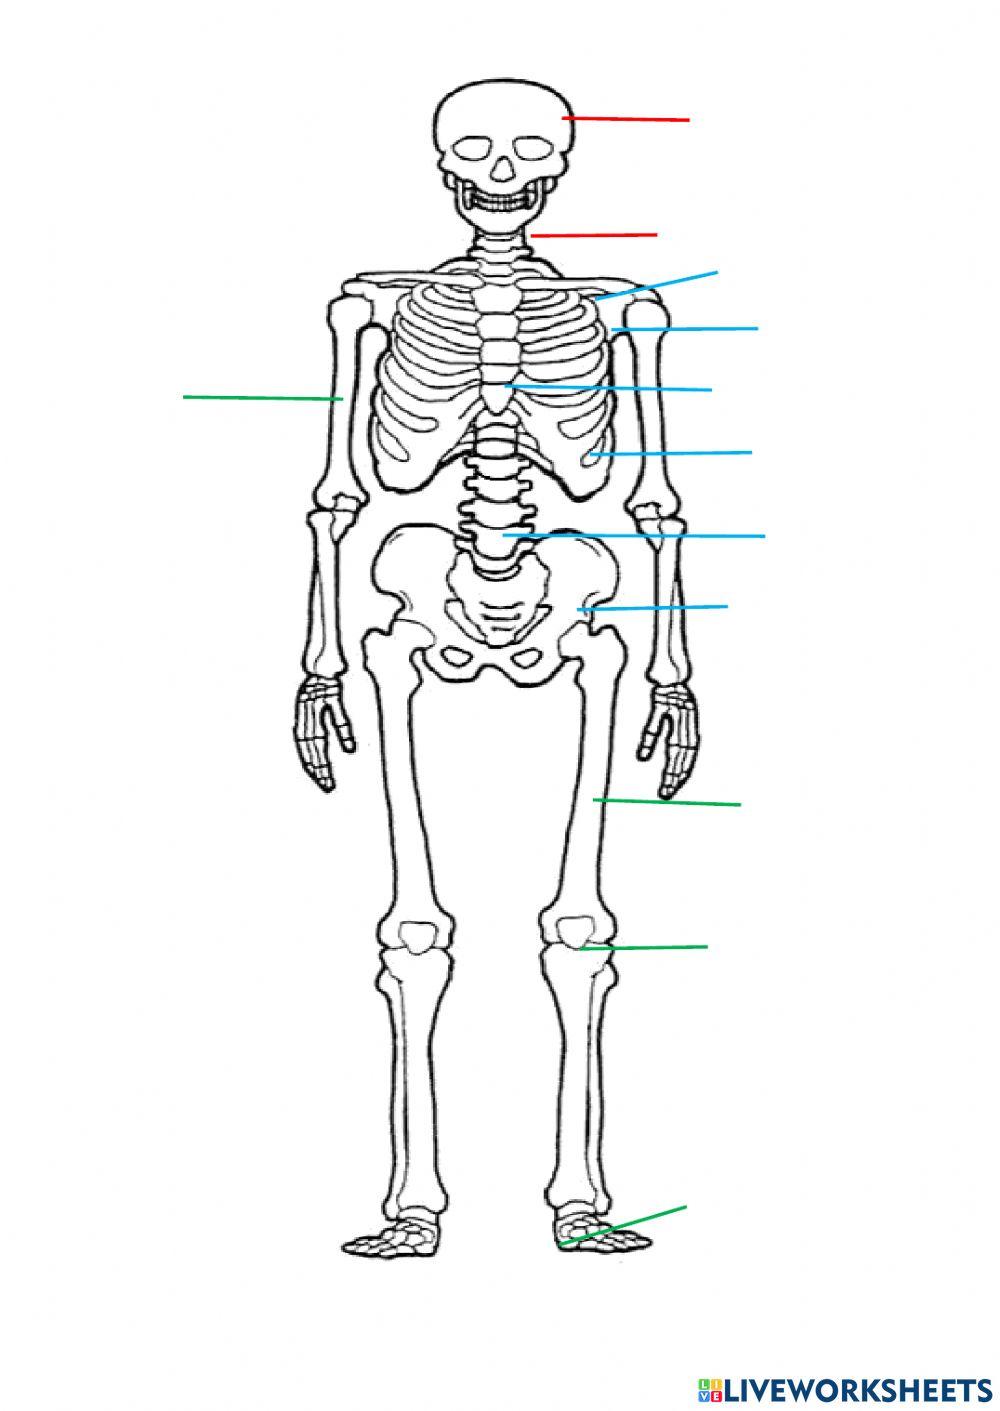 Lo scheletro